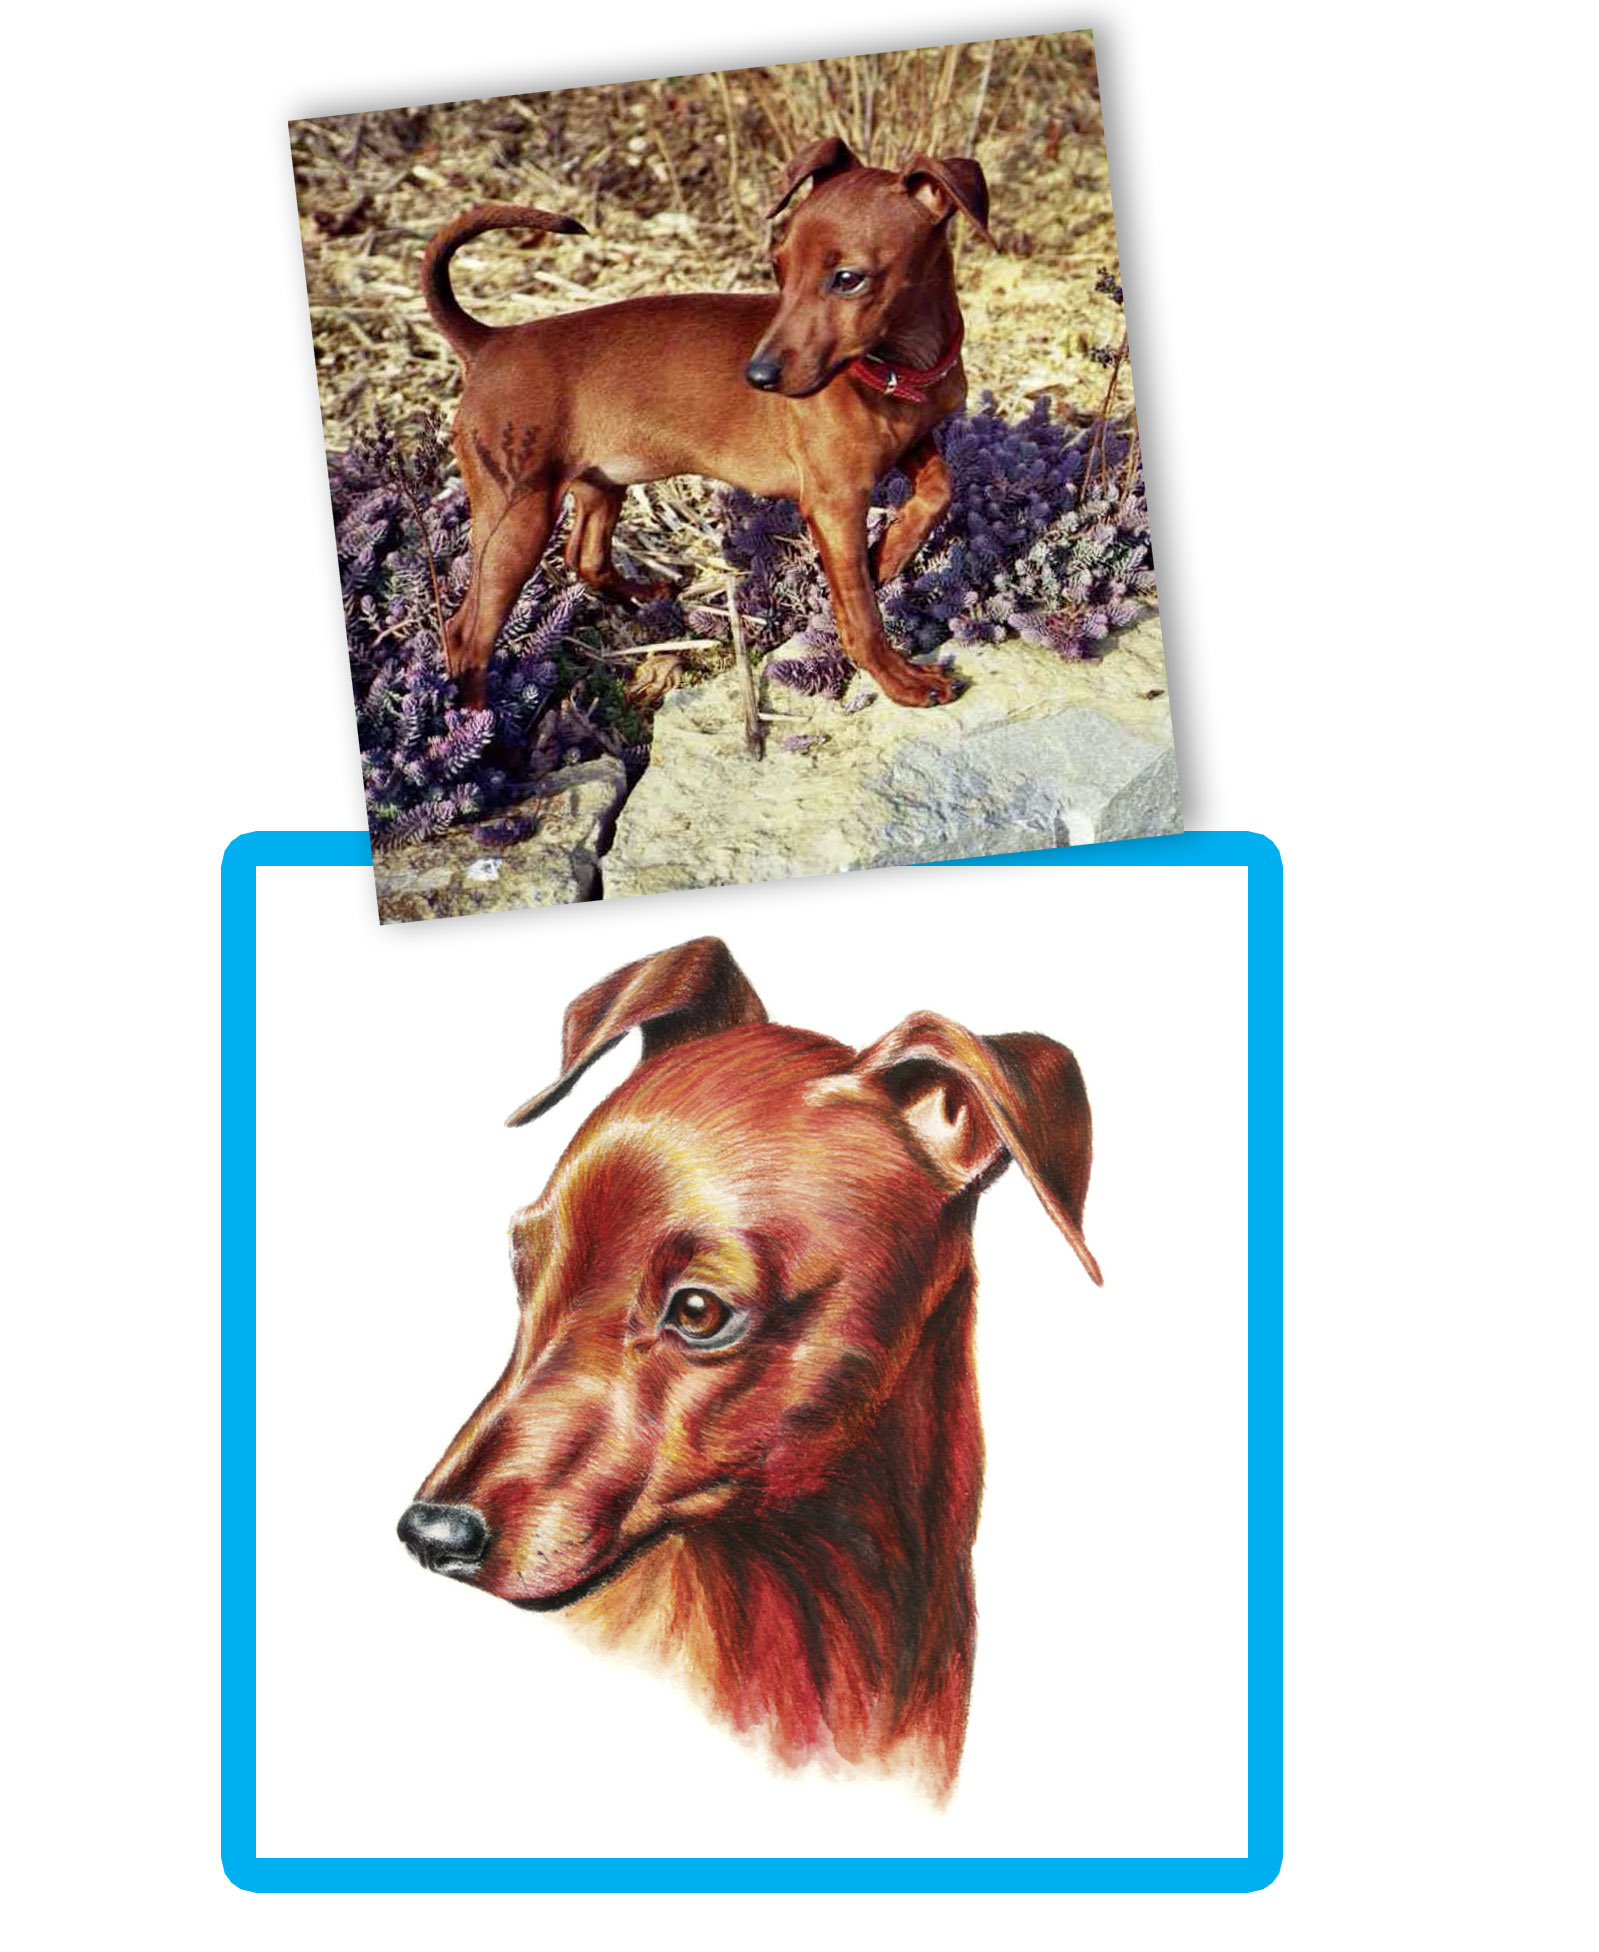 Vergleich gemaltes Tierportraits und Vorlagenfoto